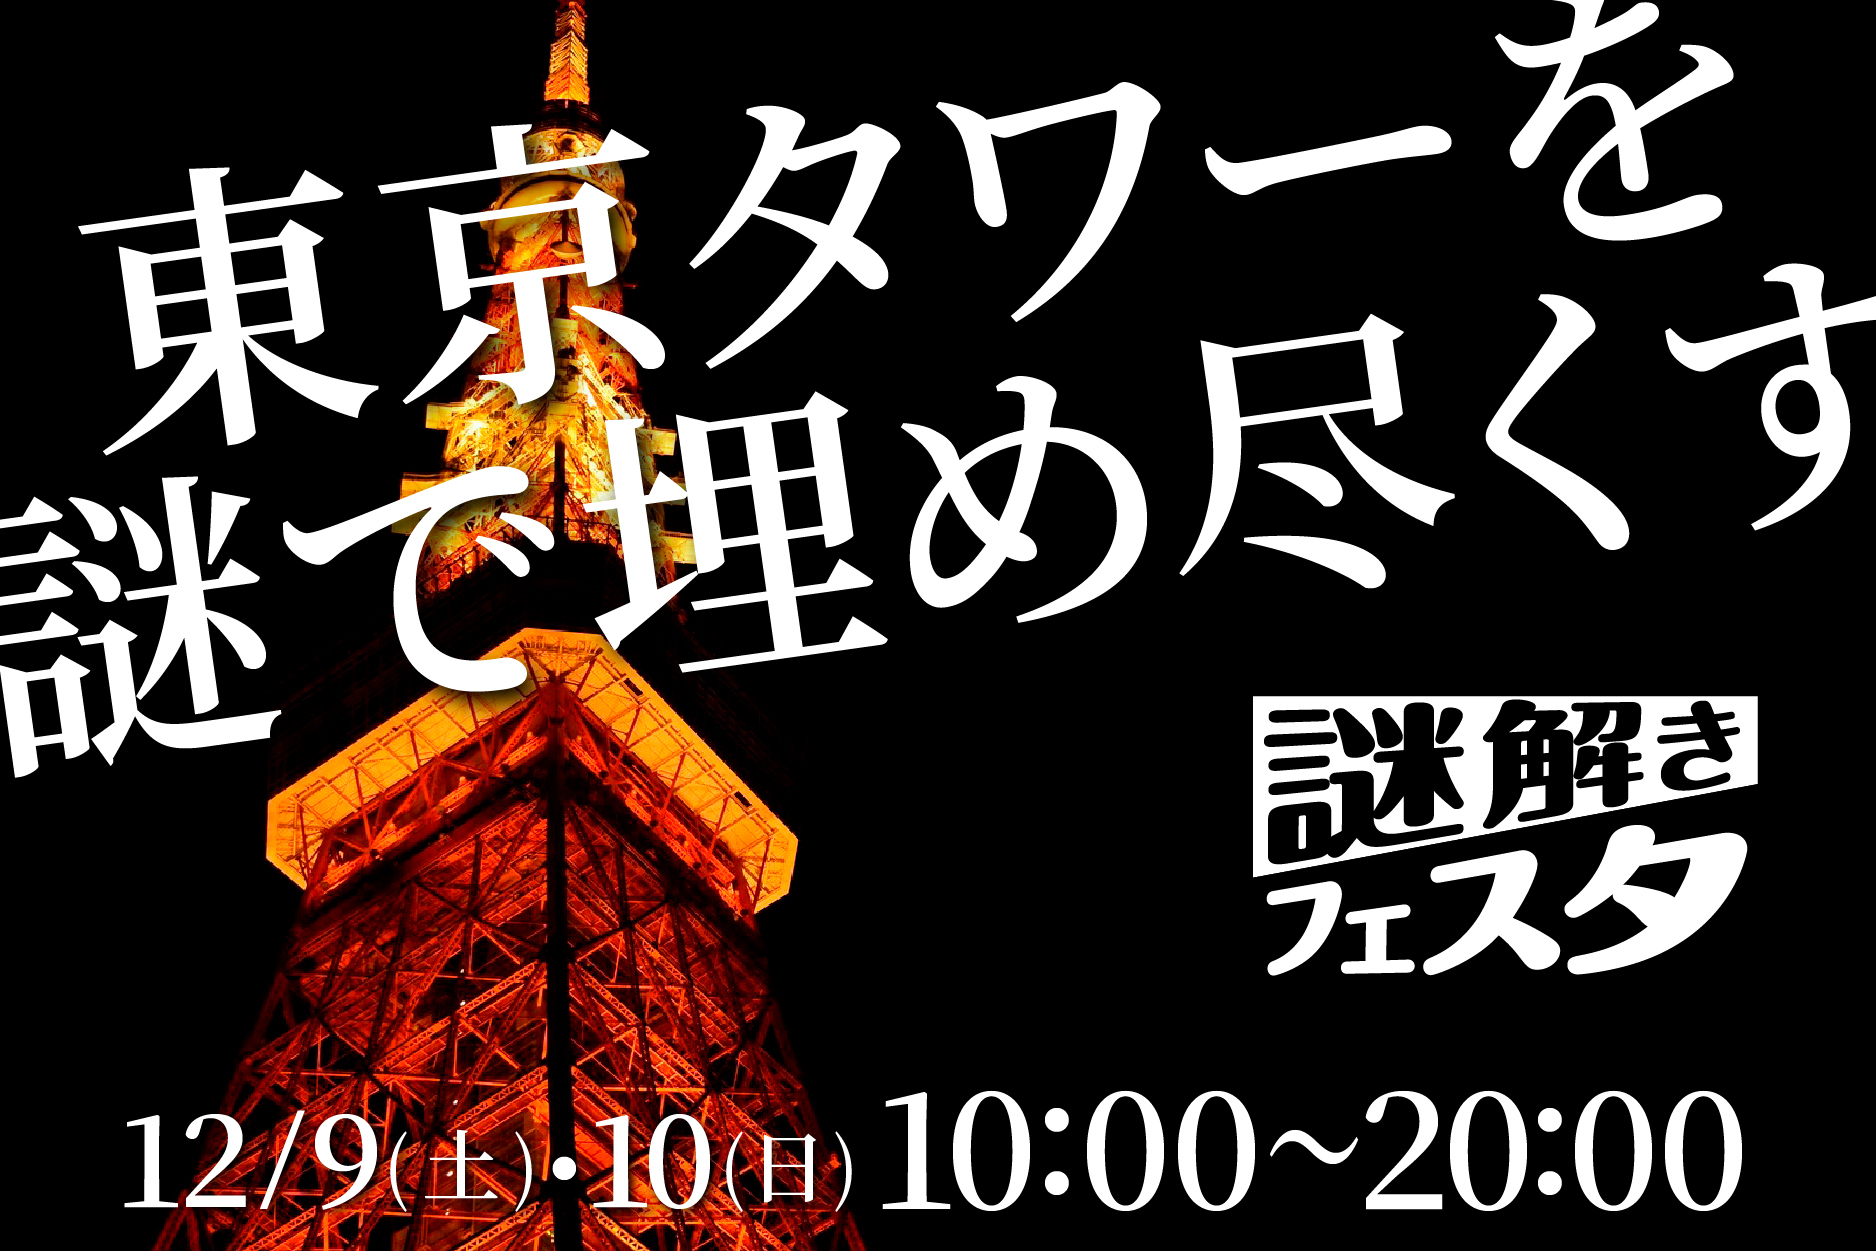 謎解きフェスタ in 東京タワー 12/9(土)/10(日) 10:00〜20:00